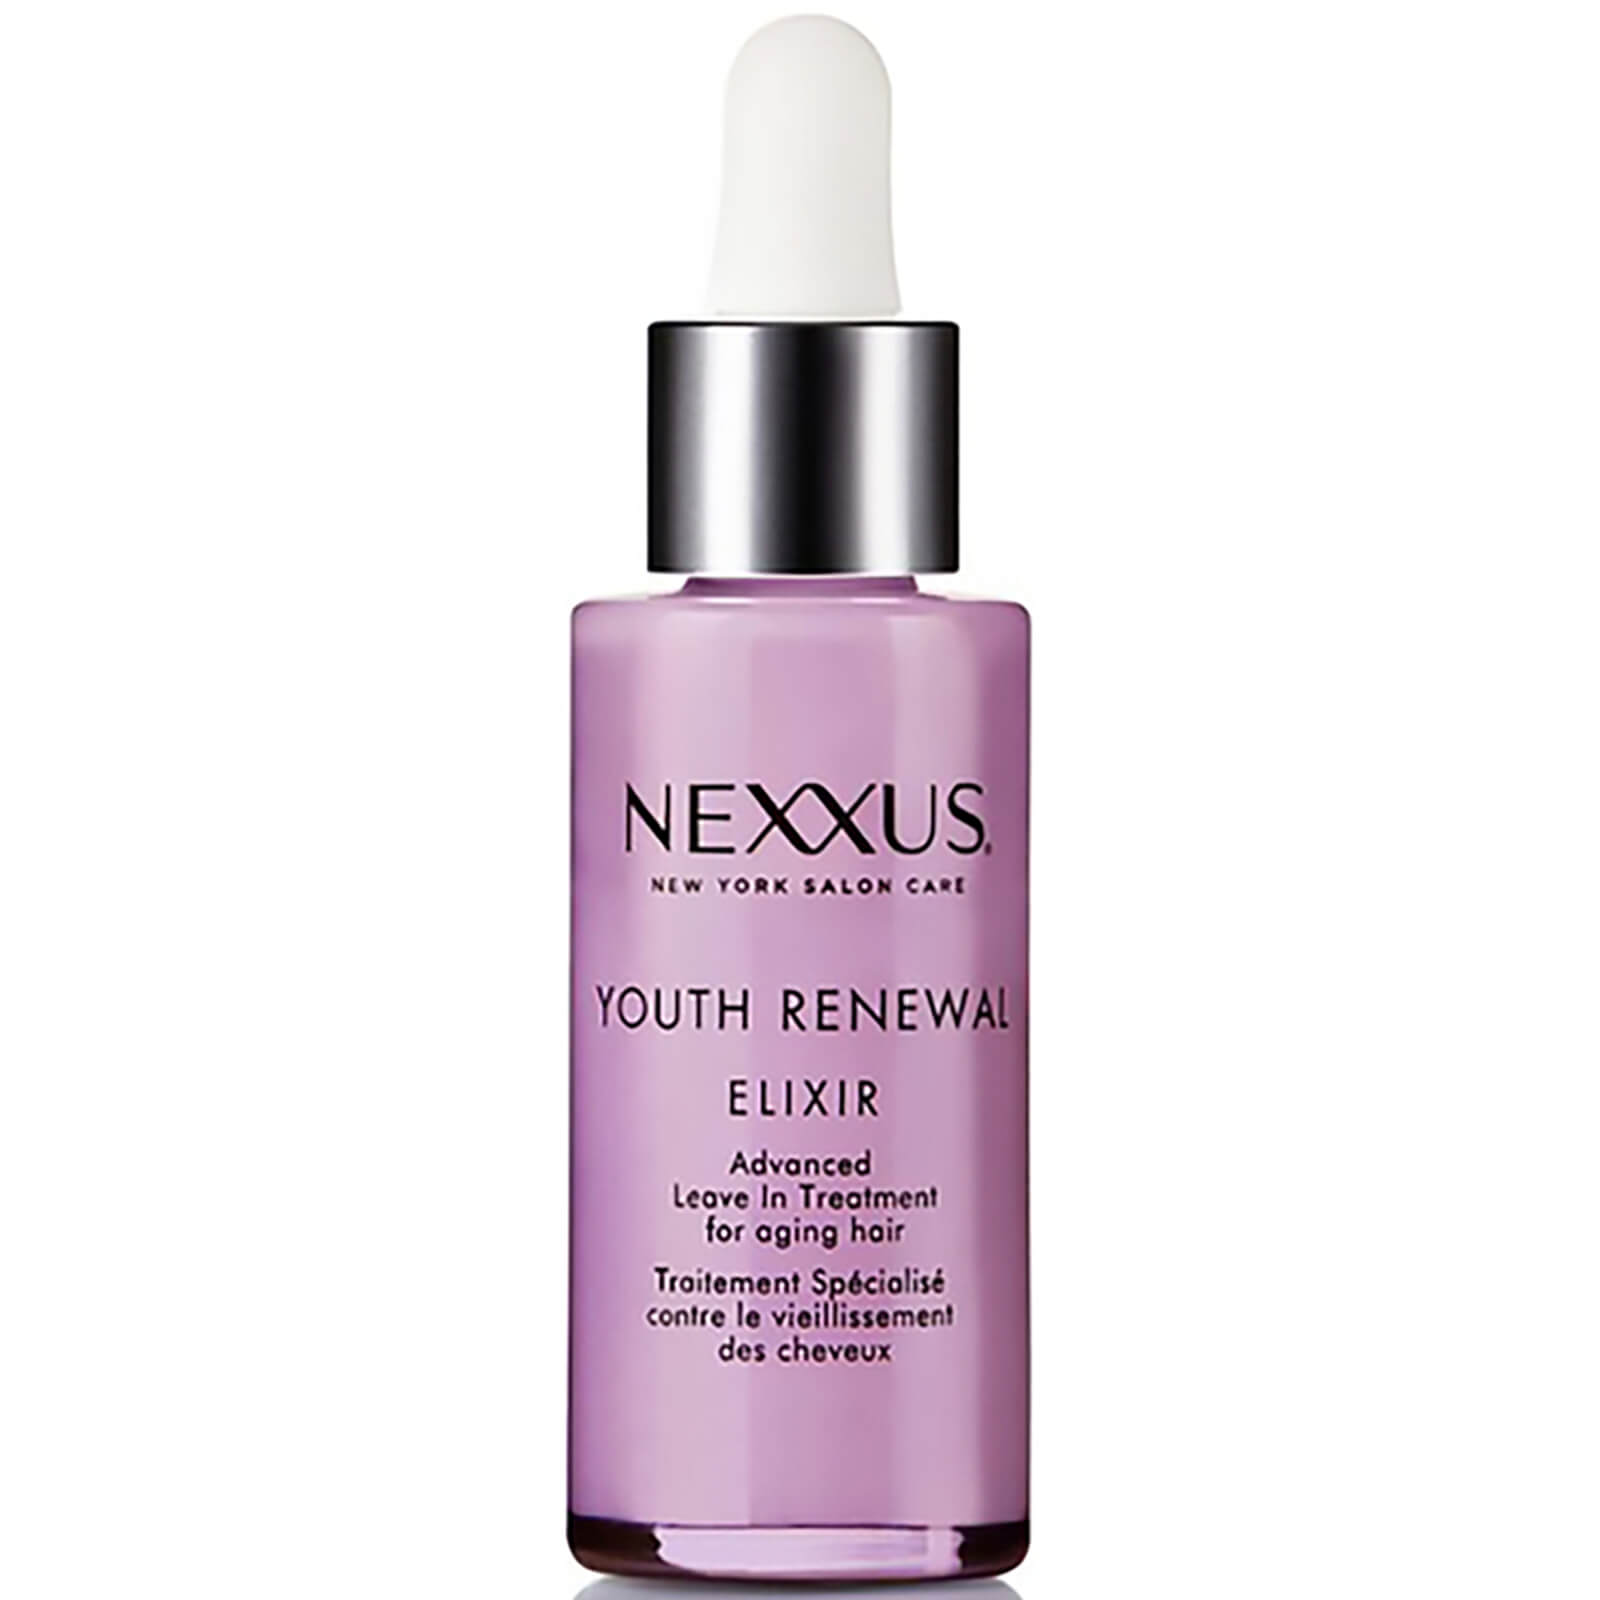 Youth Renewal Elixir de Nexxus (28 ml)